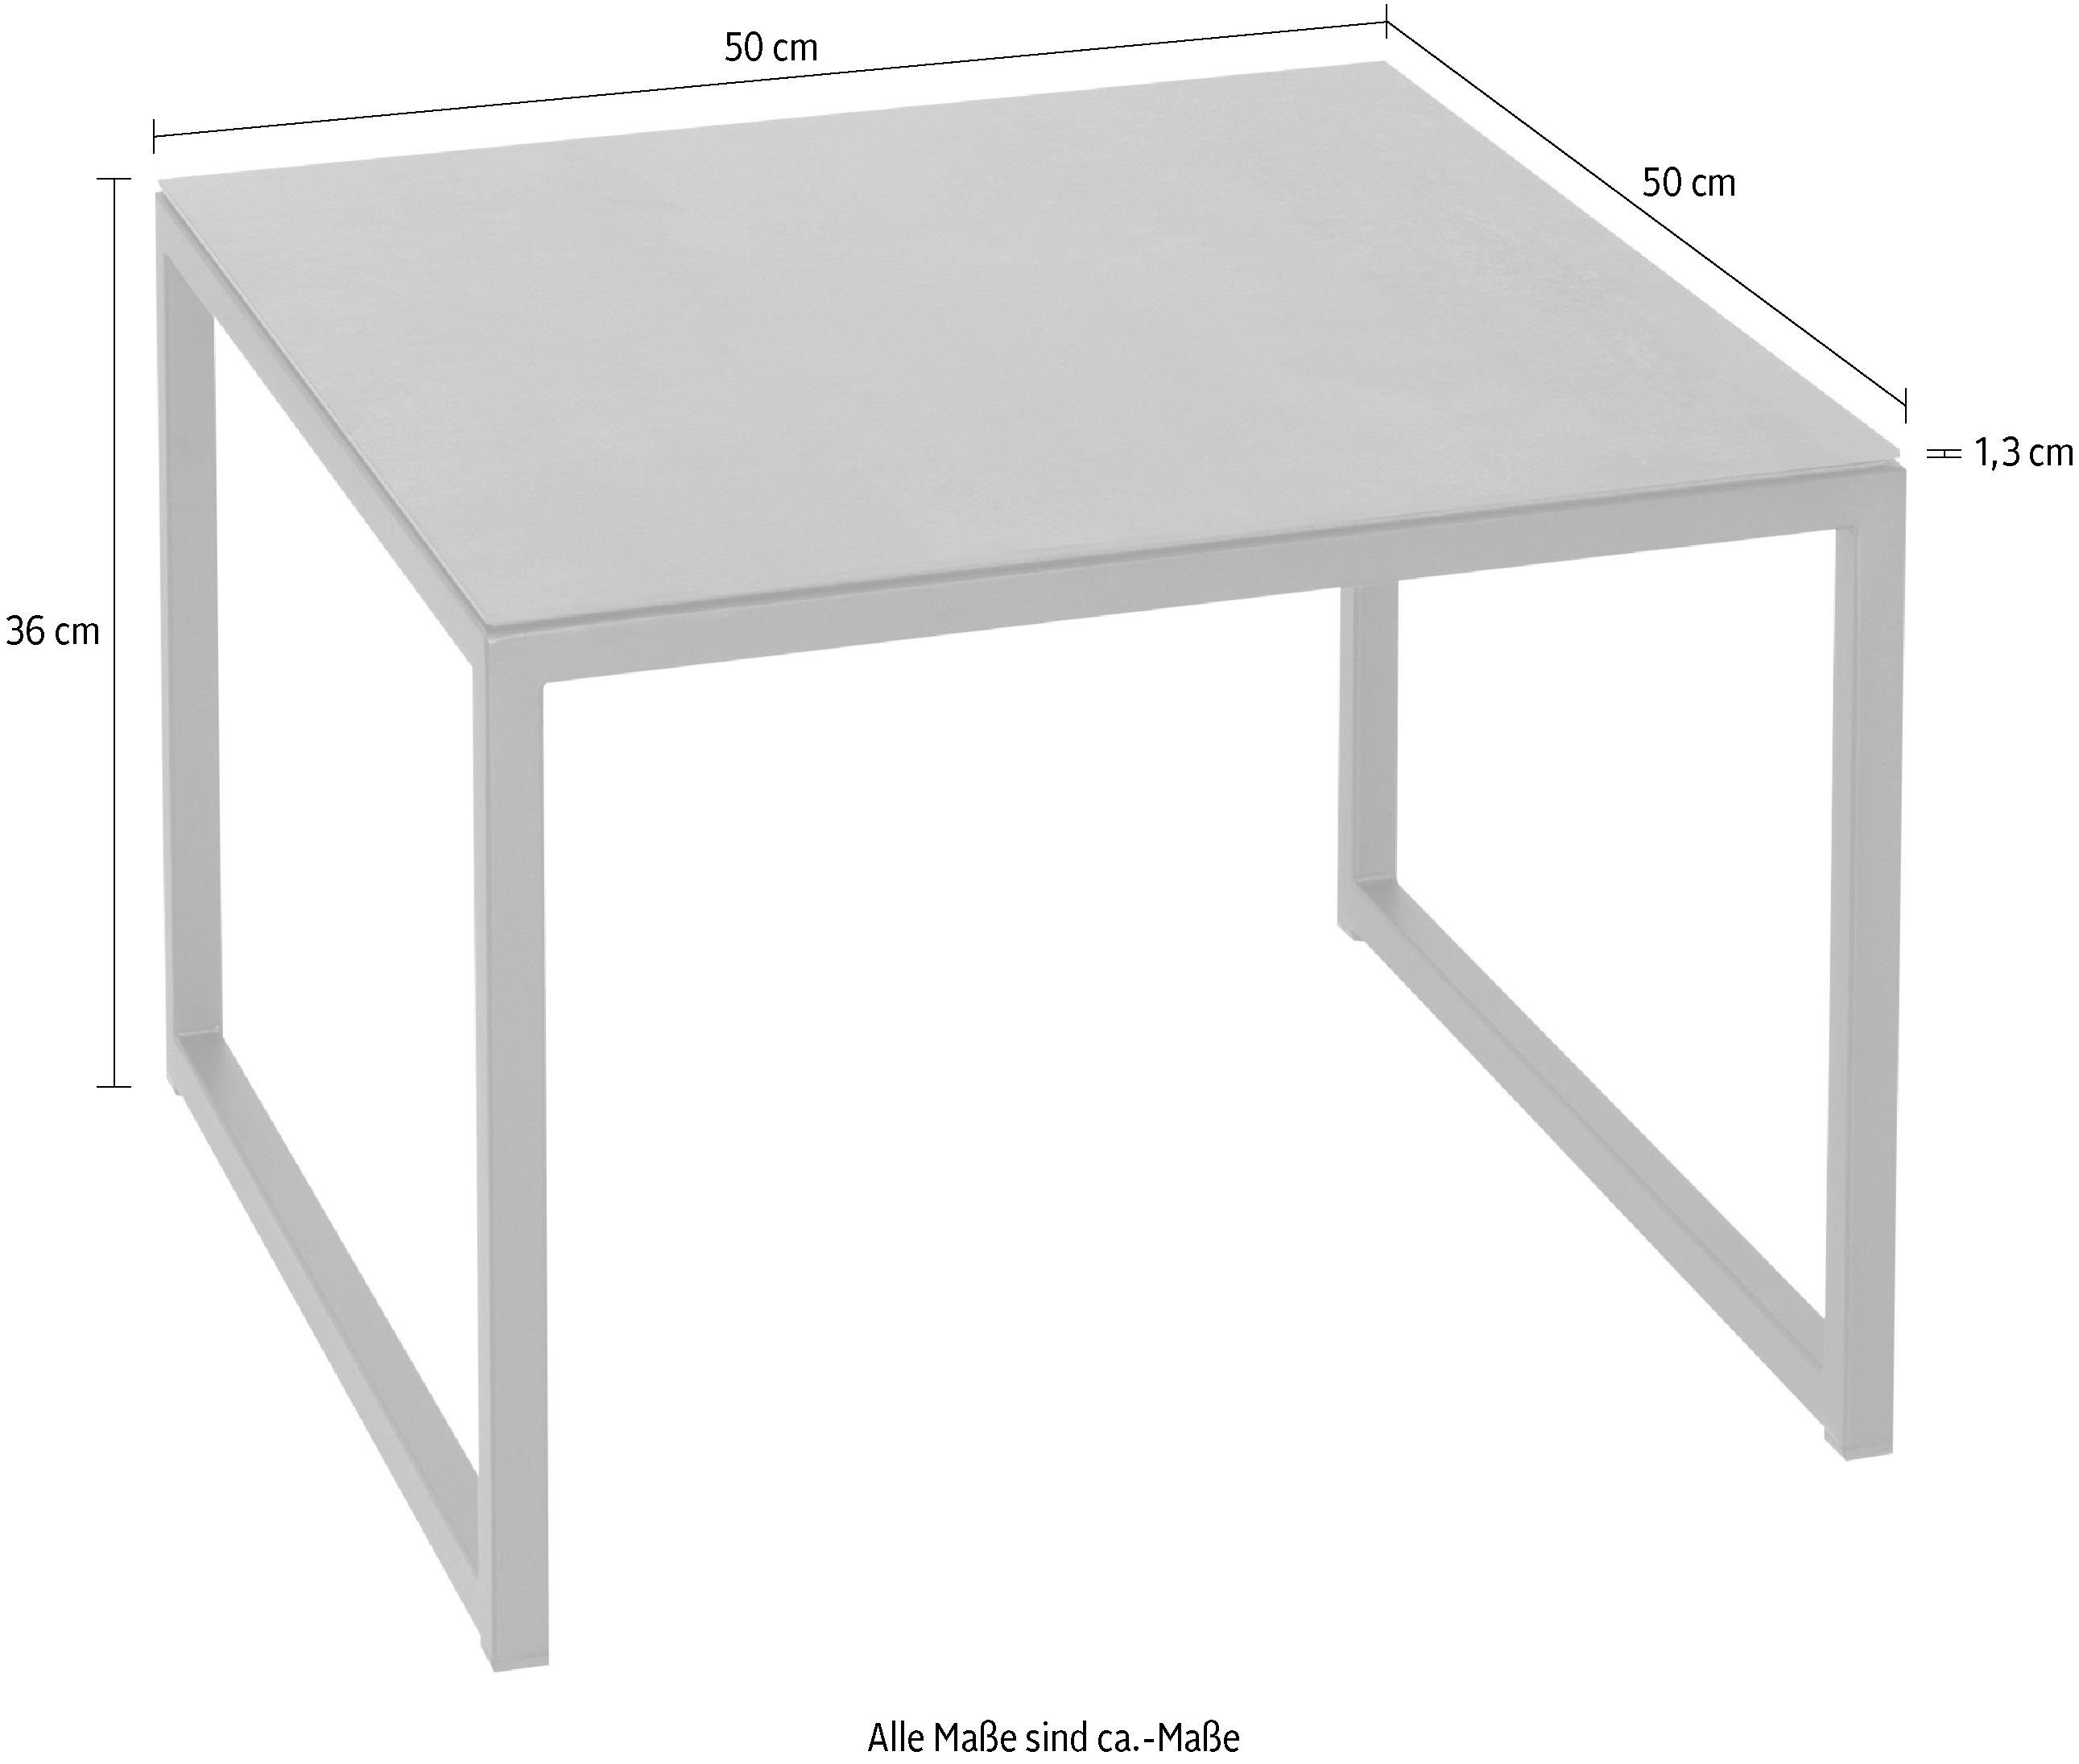 Henke Möbel Tischplatte aus Beistelltisch, Keramik hochwertiger